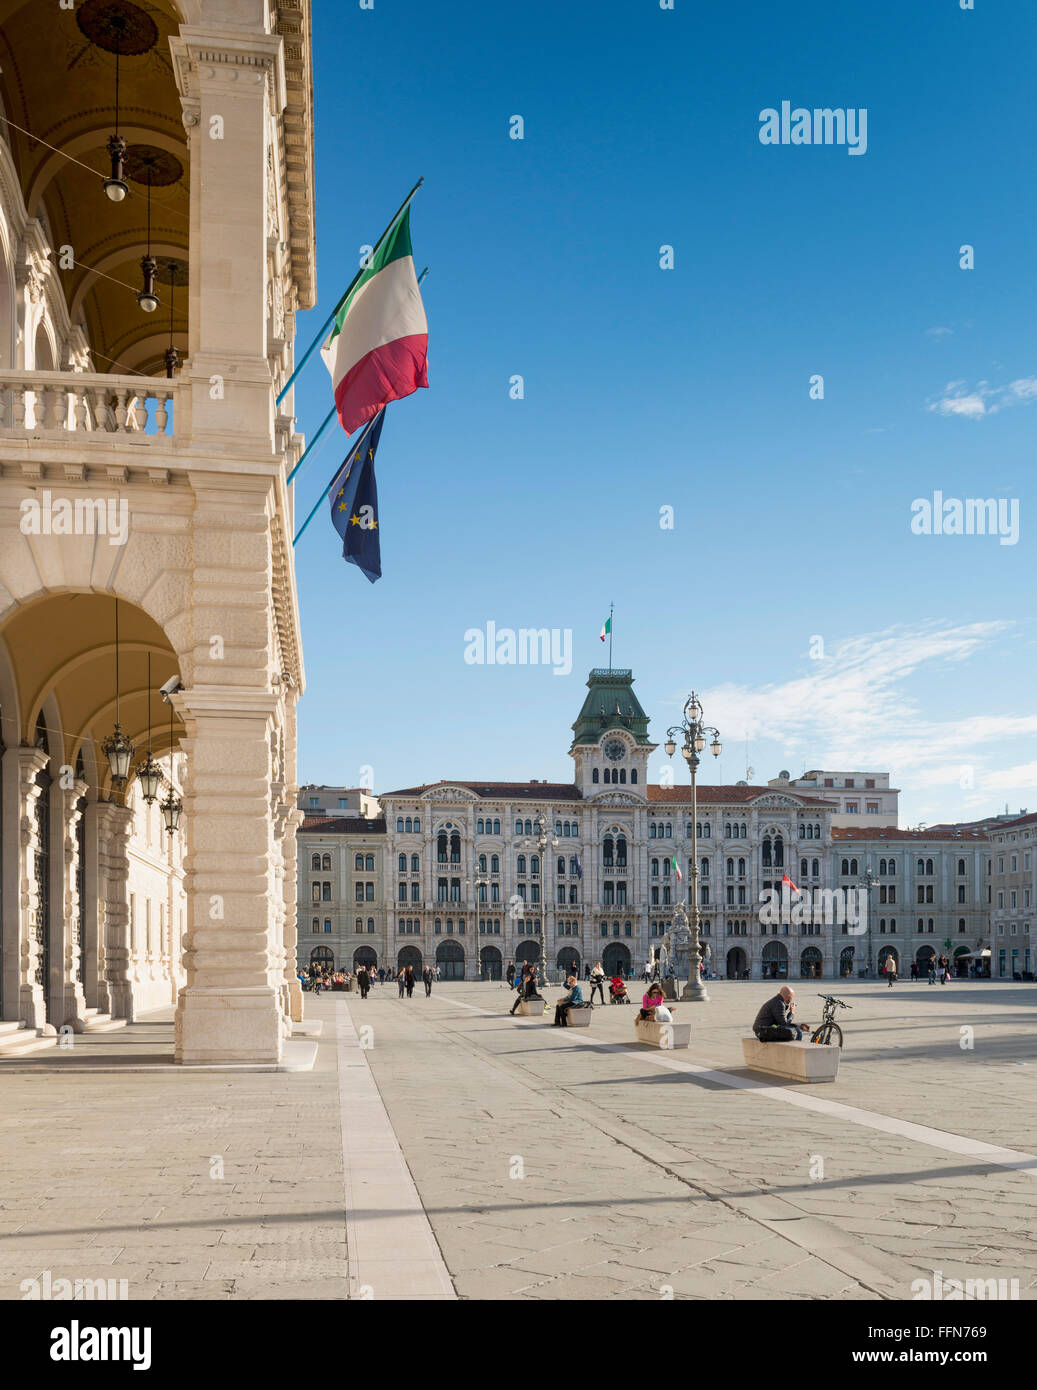 Tourists in Piazza Unità d'Italia, Trieste, Italy, Europe Stock Photo